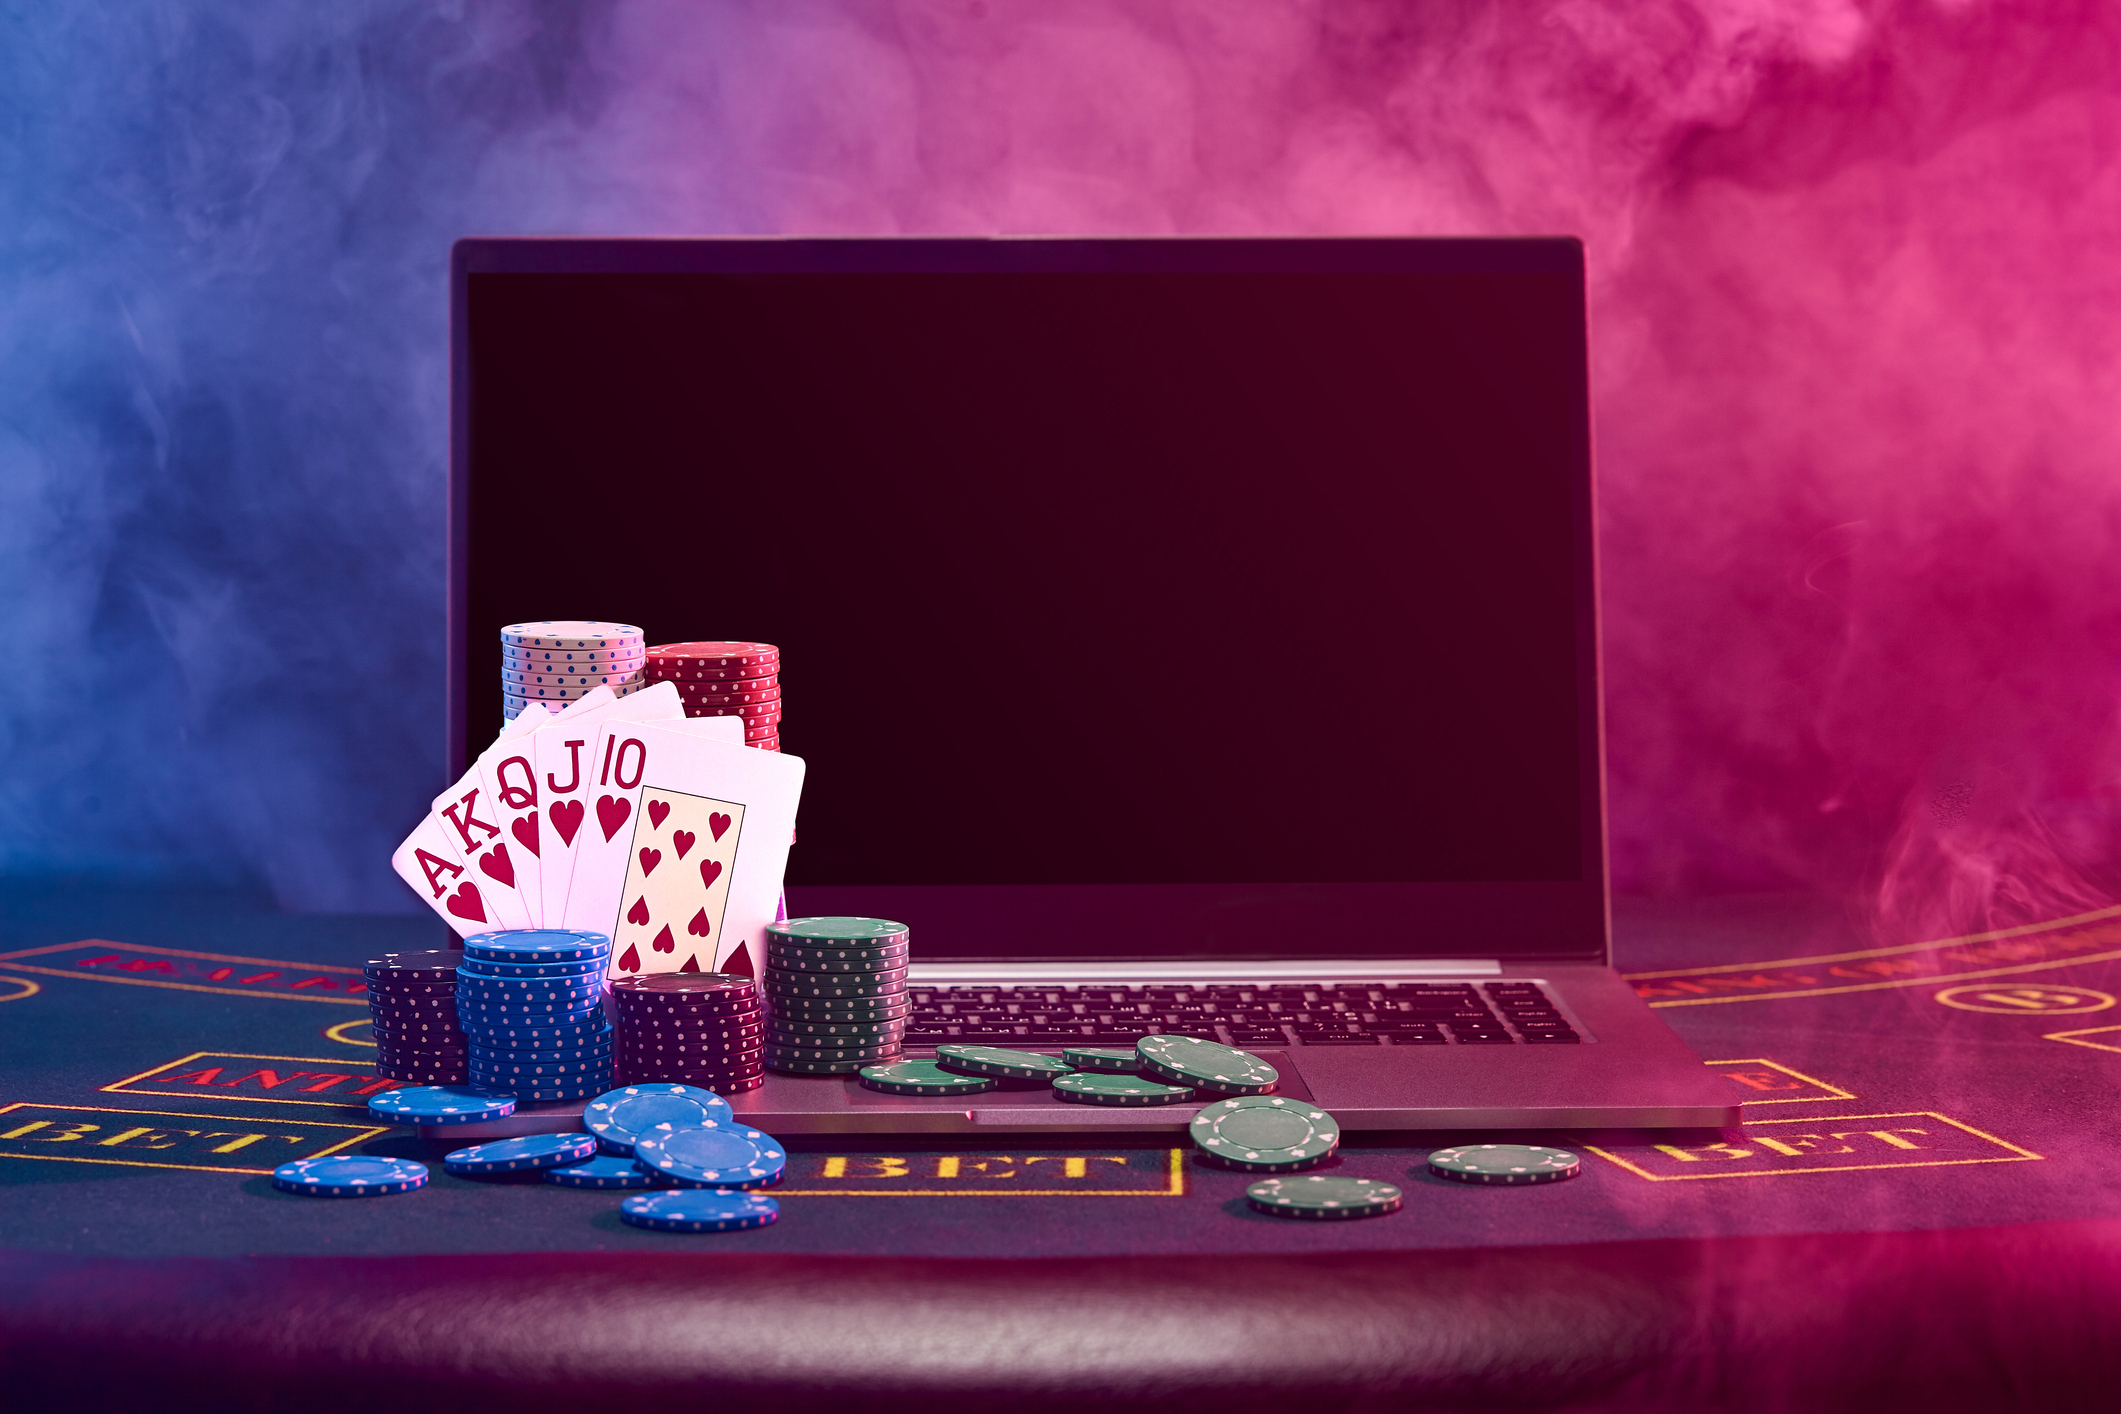 image of gambling methods